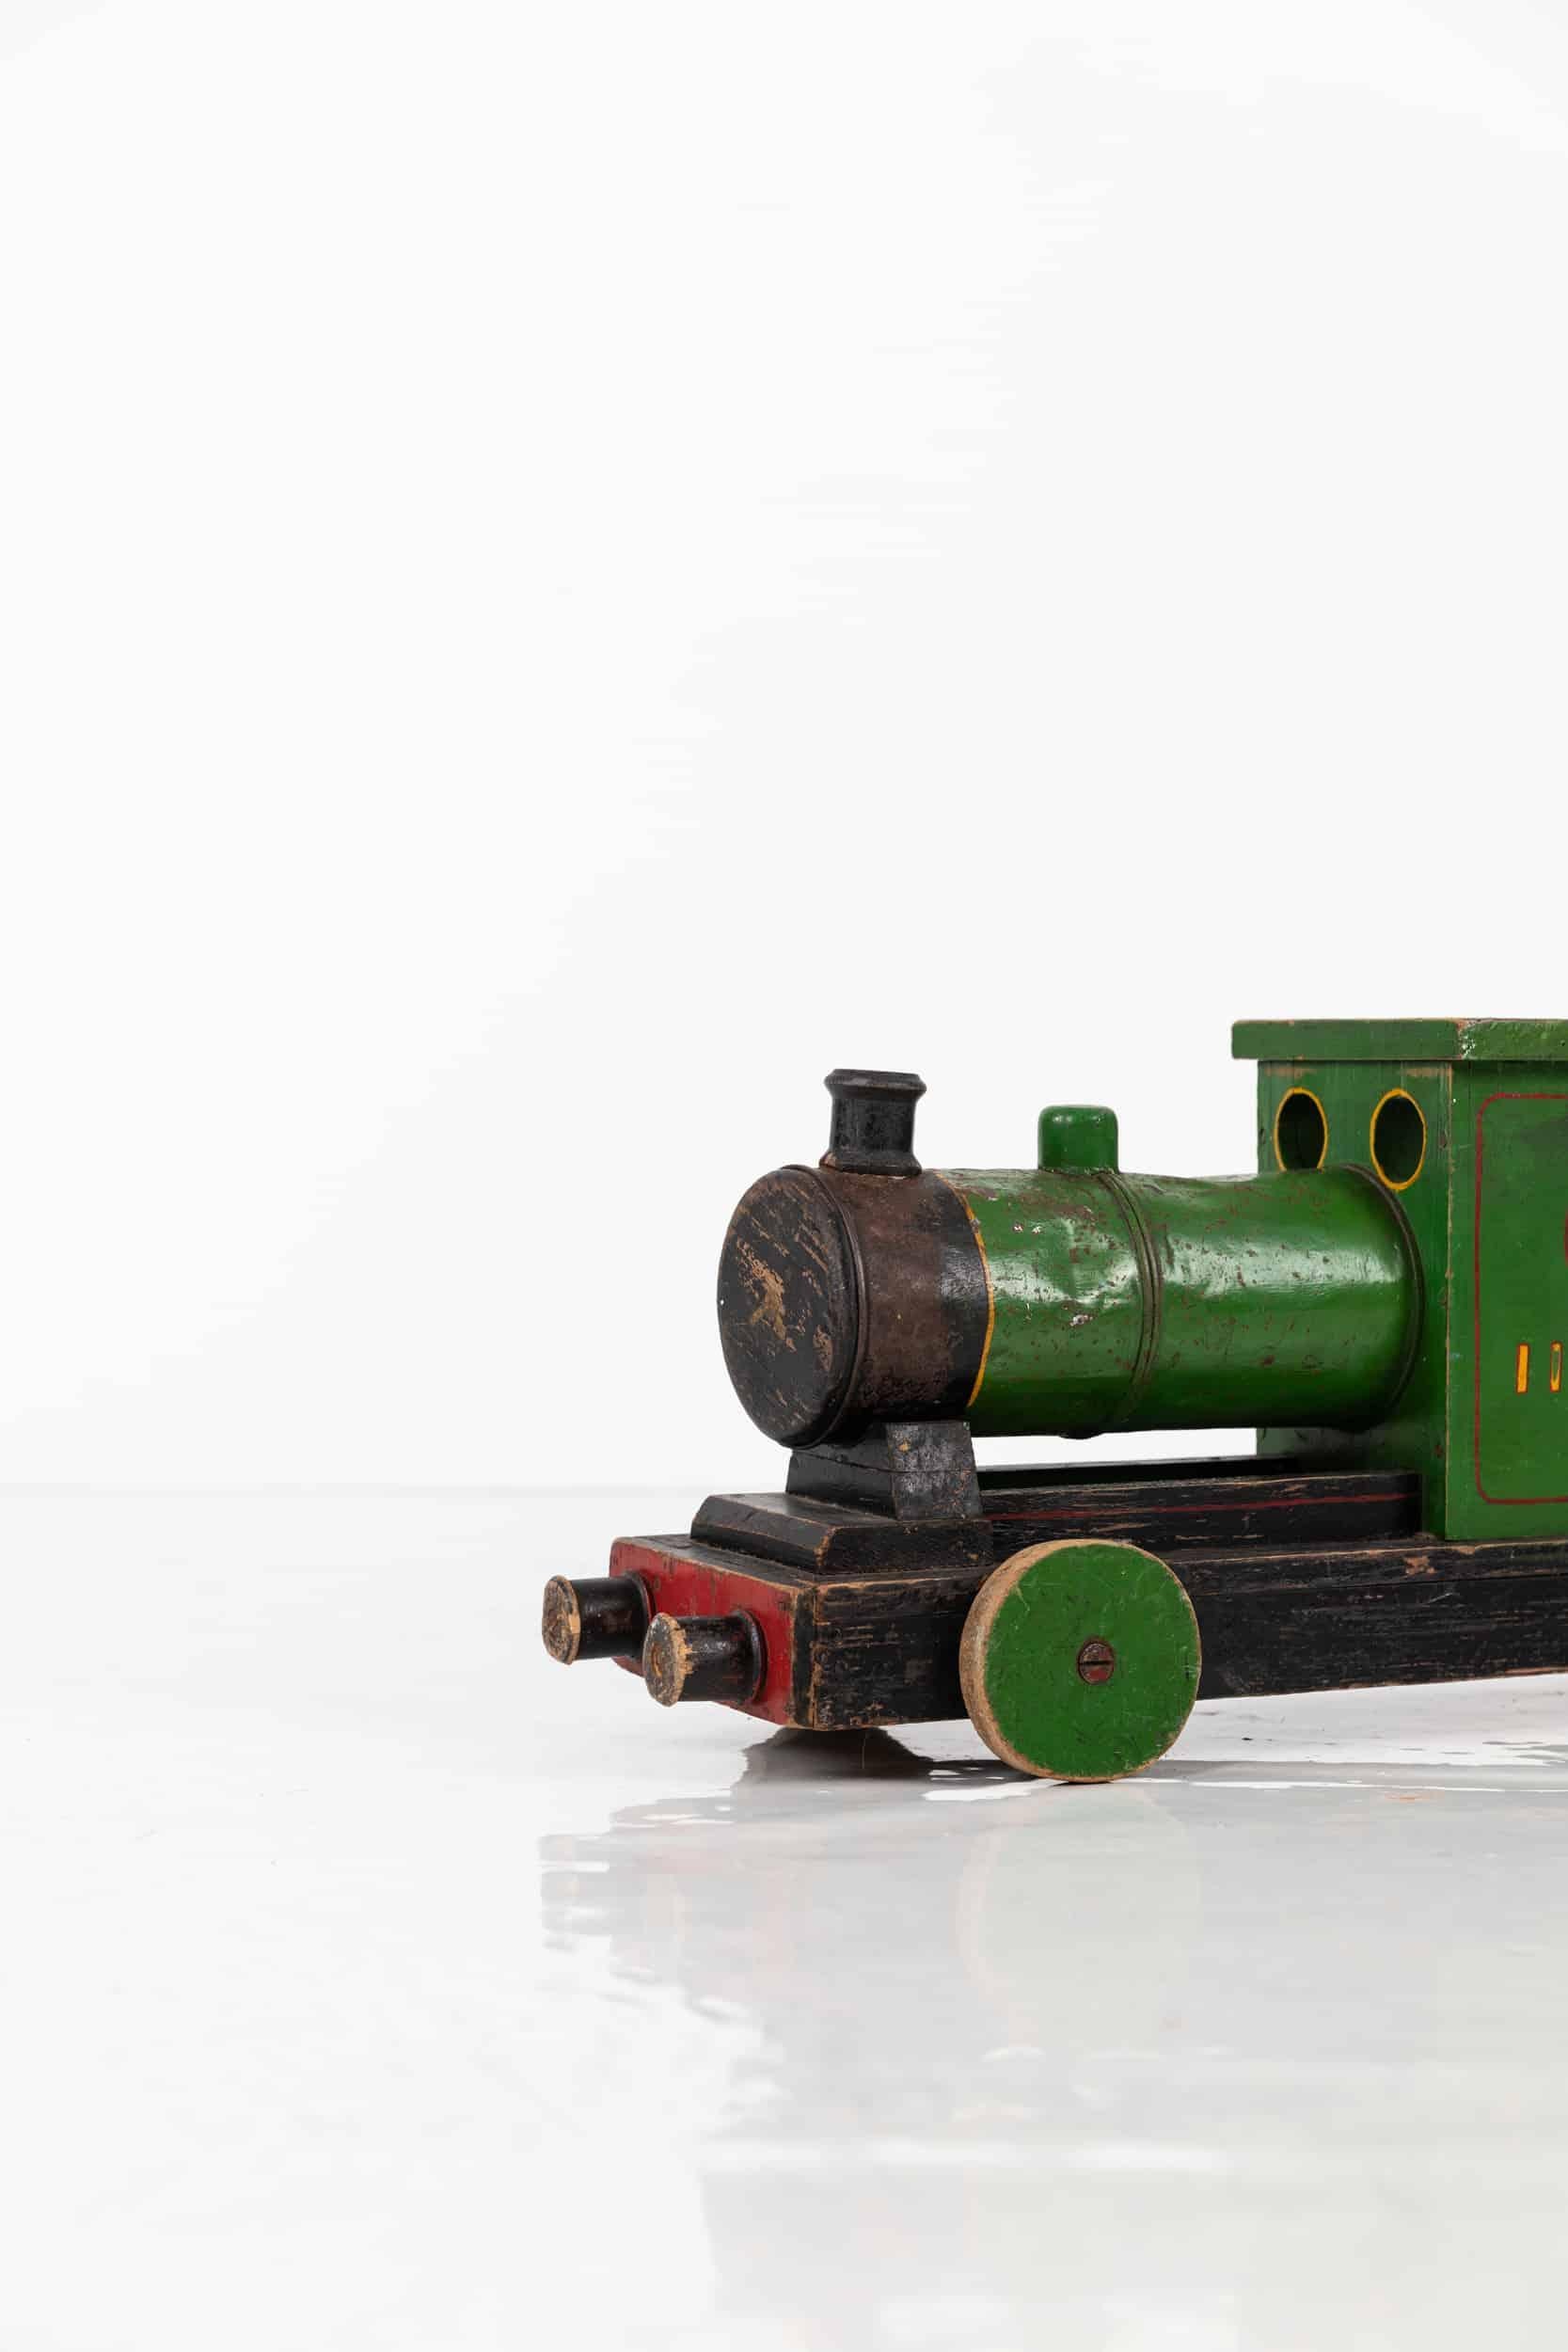 Un train jouet merveilleusement formé, peint en vert. c.1940.

Probablement construit en scratch, en bois et en métal, tout en peinture originale avec des lettres et des chiffres inscrits sur les côtés. Une roue a été remplacée à un moment donné